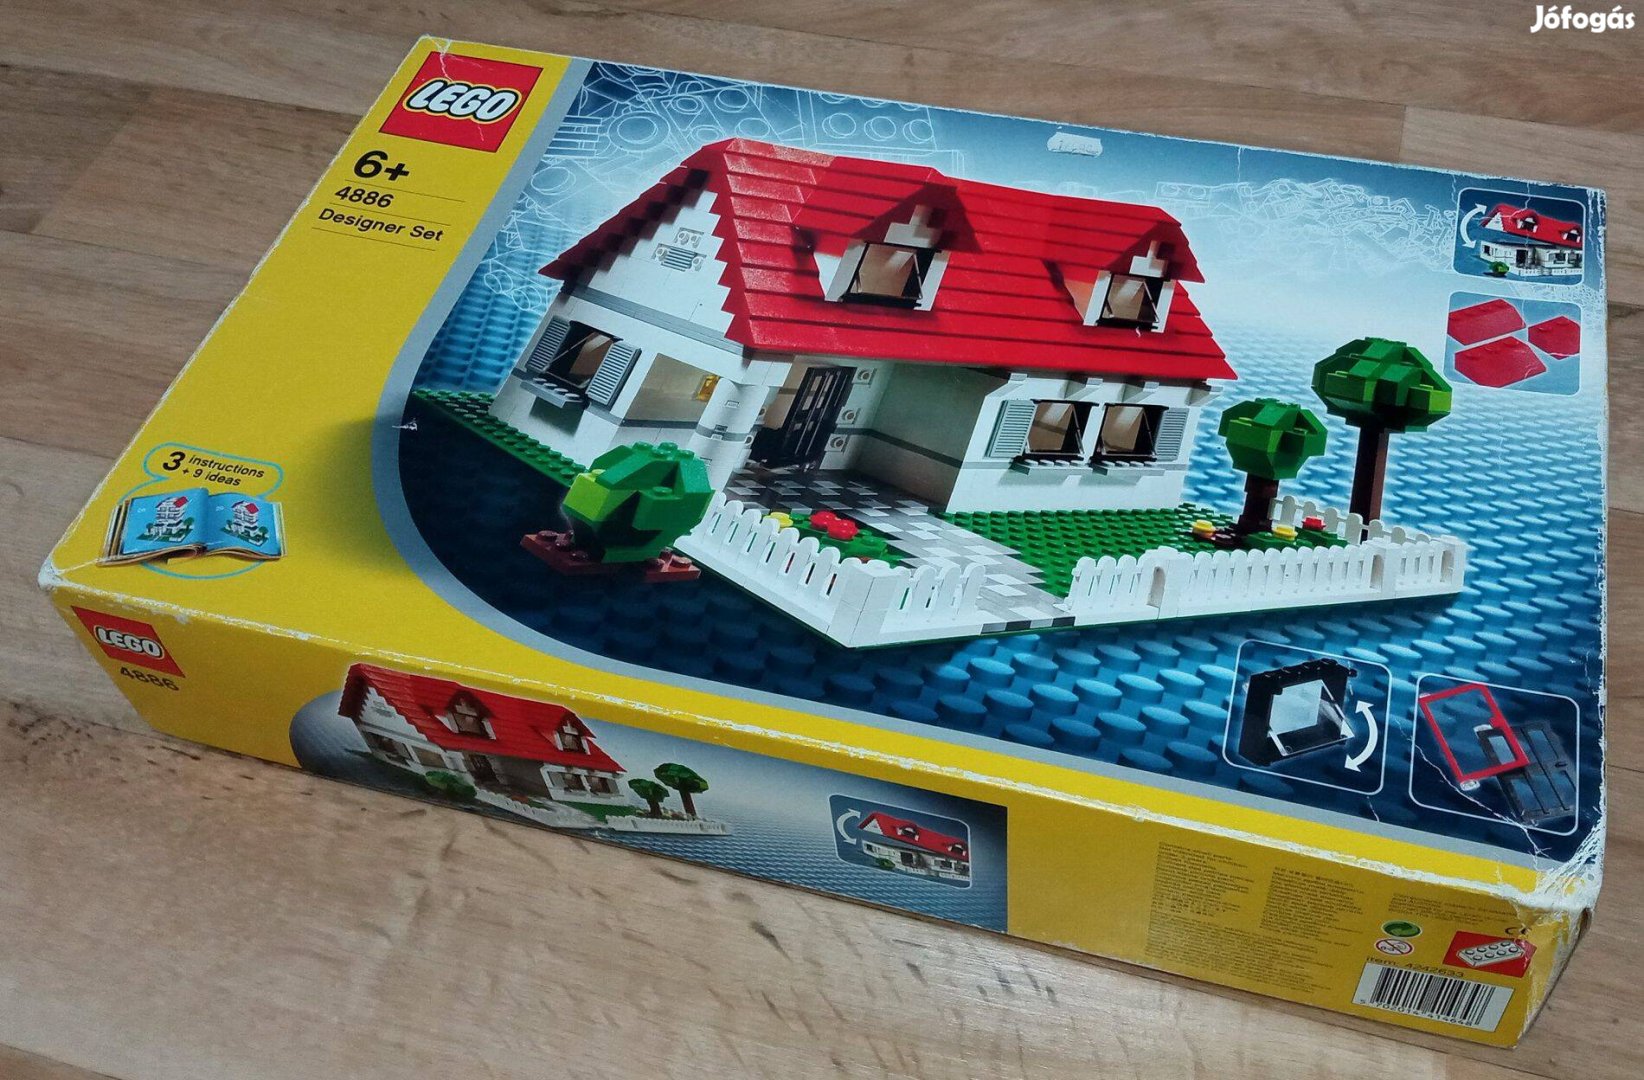 Bontatlan Lego Creator / Designer Set 4886 Building Bonanza készlet